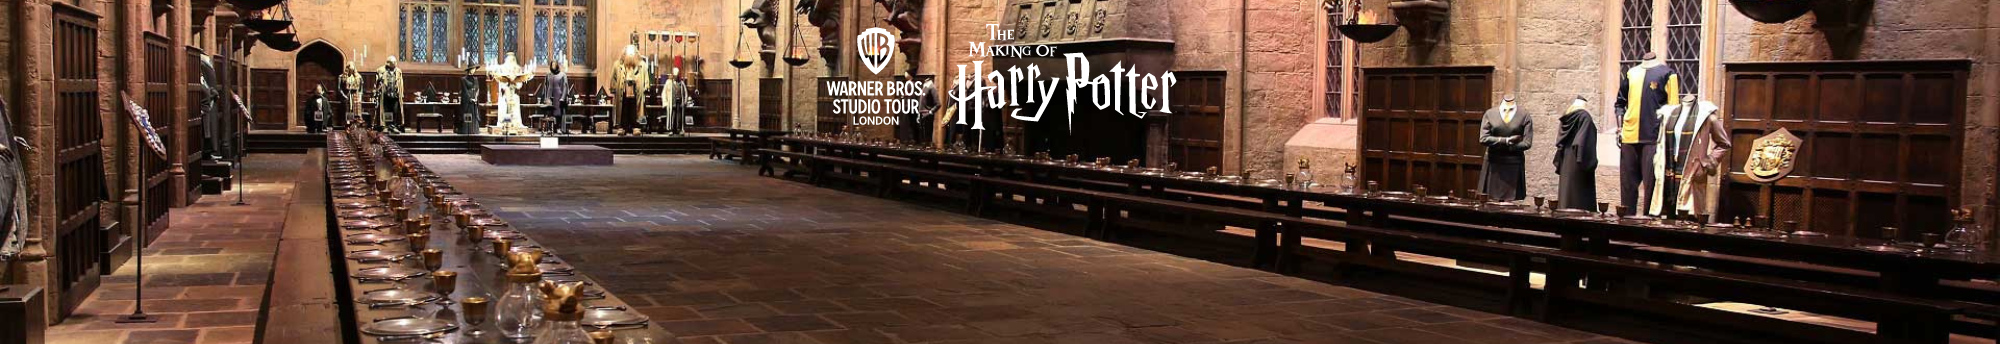 Entradas Tour Harry Potter en los Estudios Warner